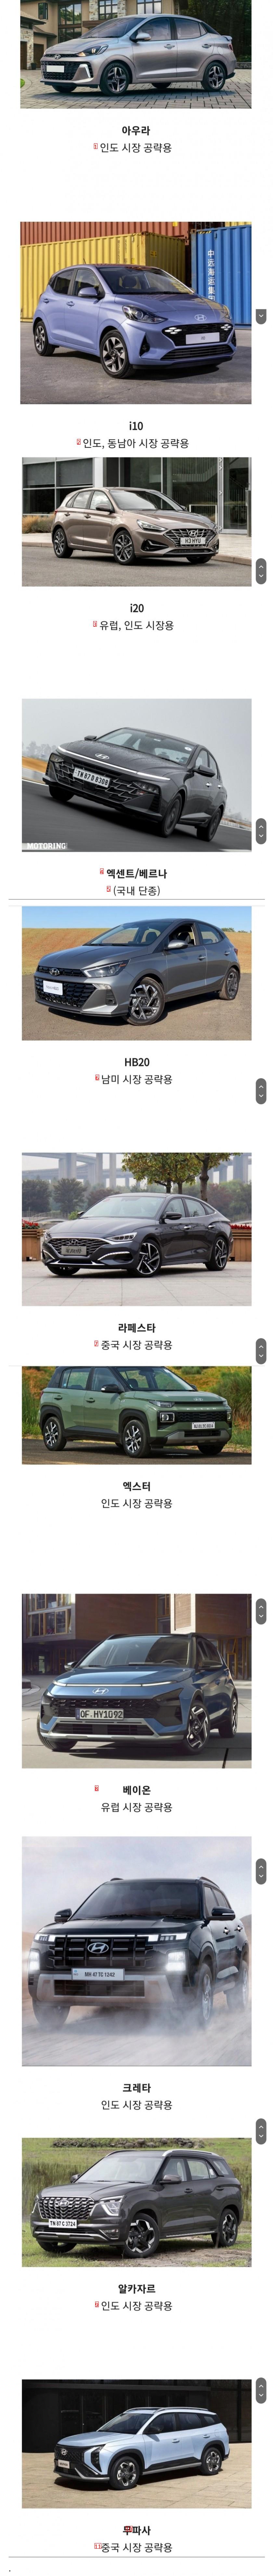 Hyundai cars not seen in Korea